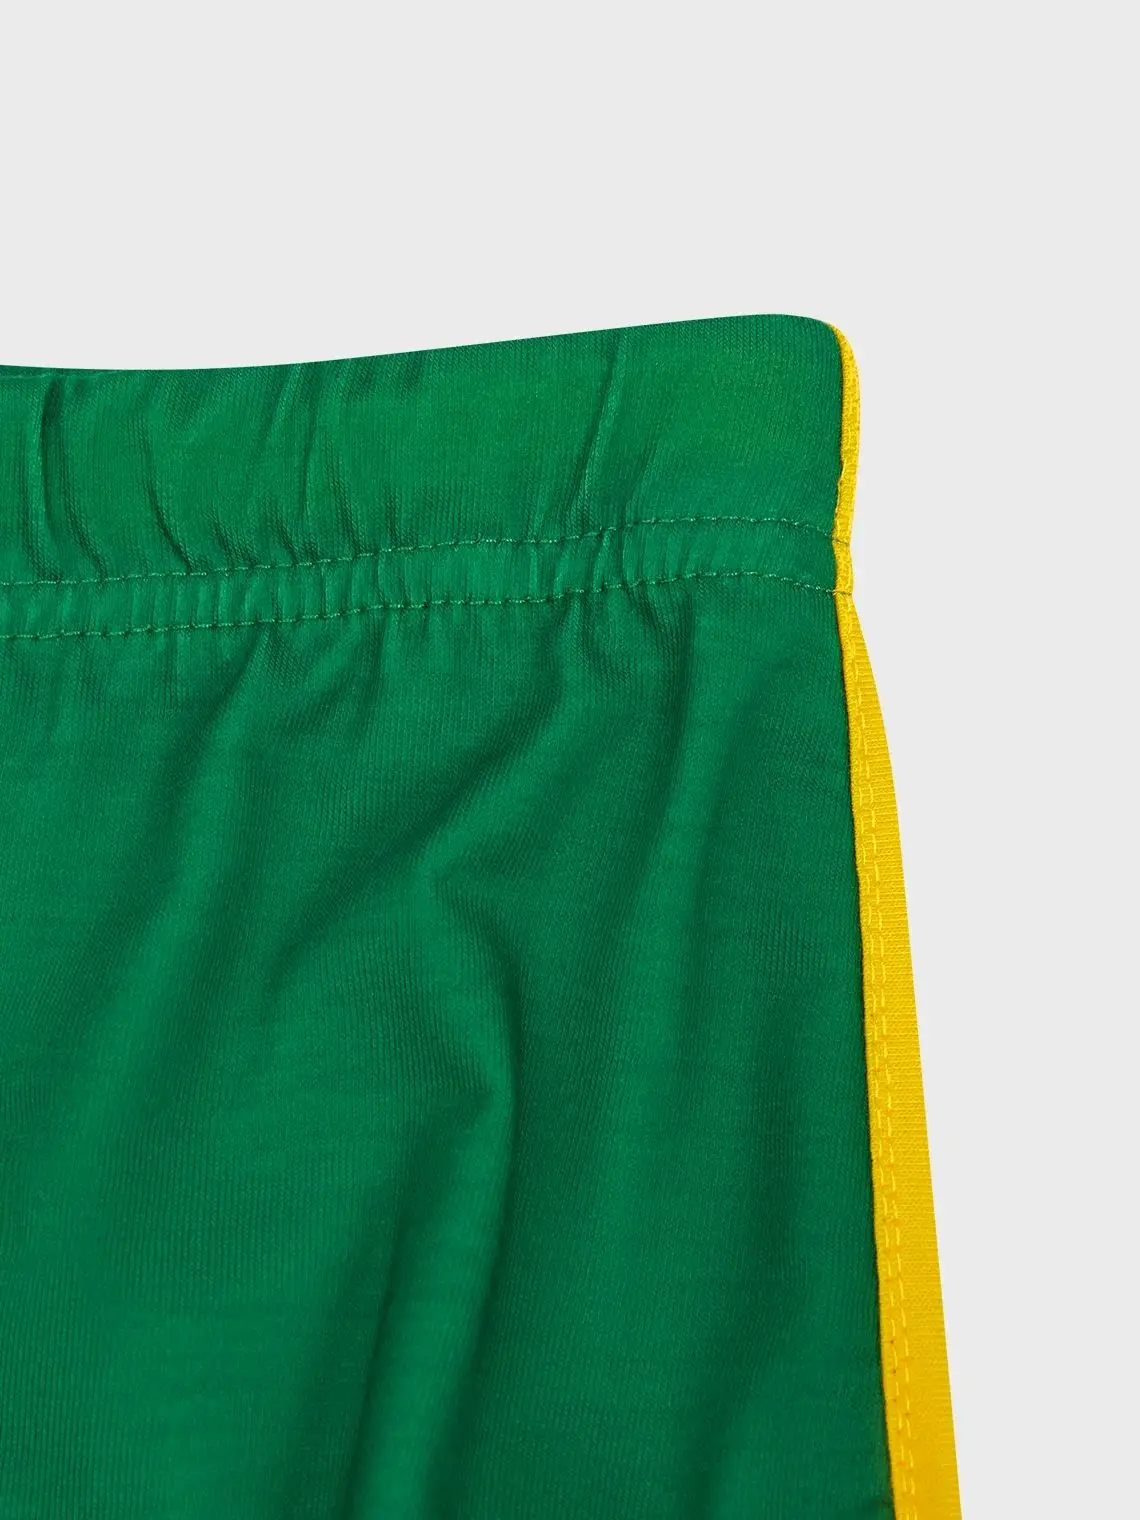 Y2K celana pendek wanita motif huruf Jamaika, celana olahraga elastis longgar kasual Korea kaki lebar